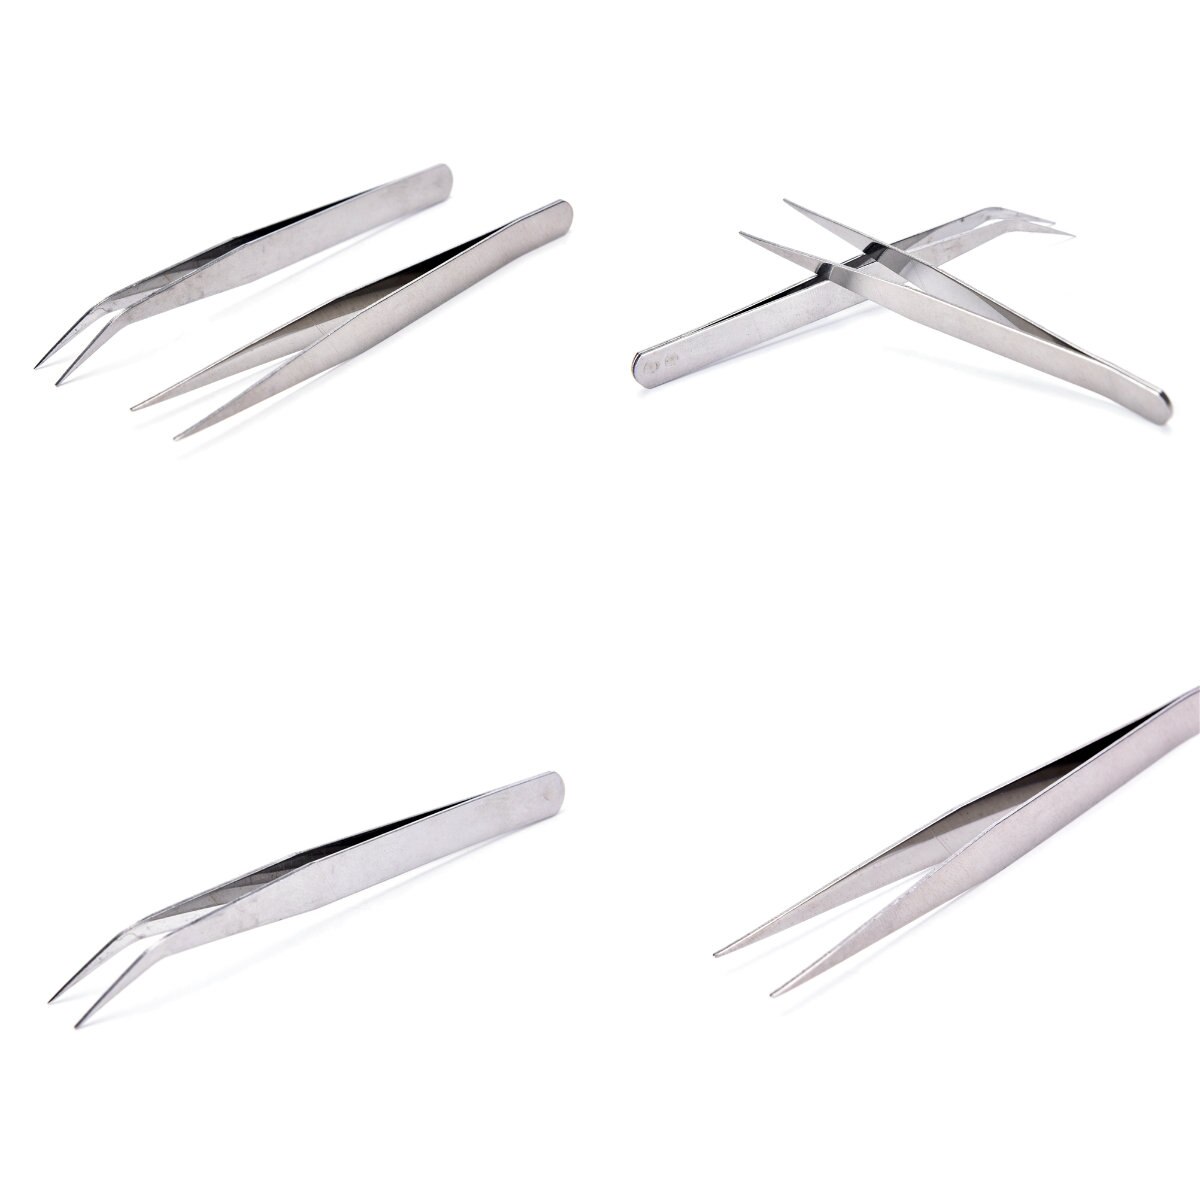 2Pcs Straight Curved Tweezer Stainless Steel Industrial Anti-Static Tweezers Tools For Crawler Repair Dental Tools